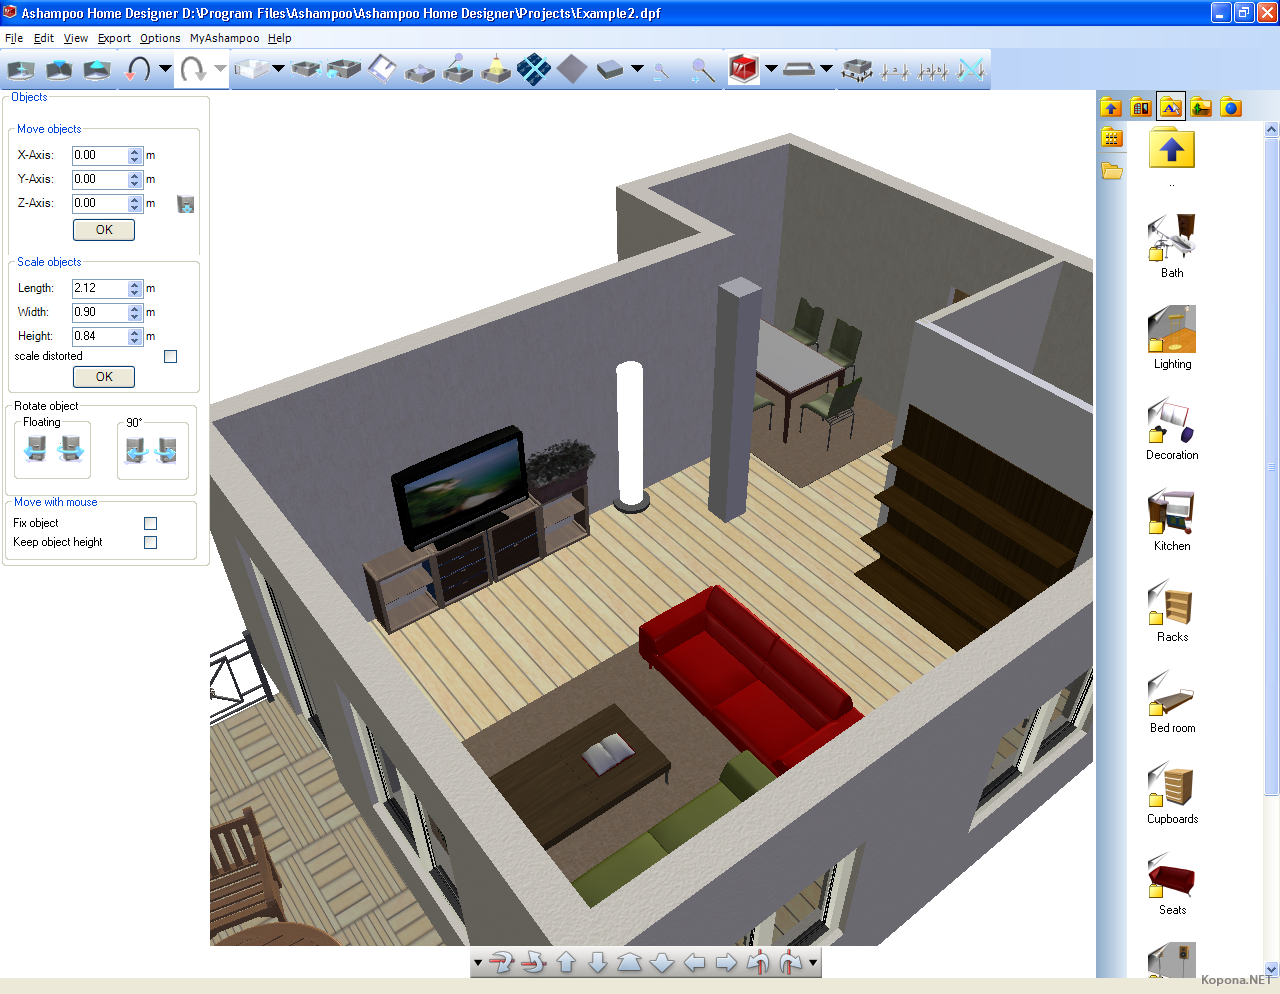 Ashampoo Home Designer Pro 2 проекты. 3d программа расстановки мебели. Спроектировать расстановку мебели. Программа для 3д расстановки мебели. Программа для дизайна интерьера на андроид